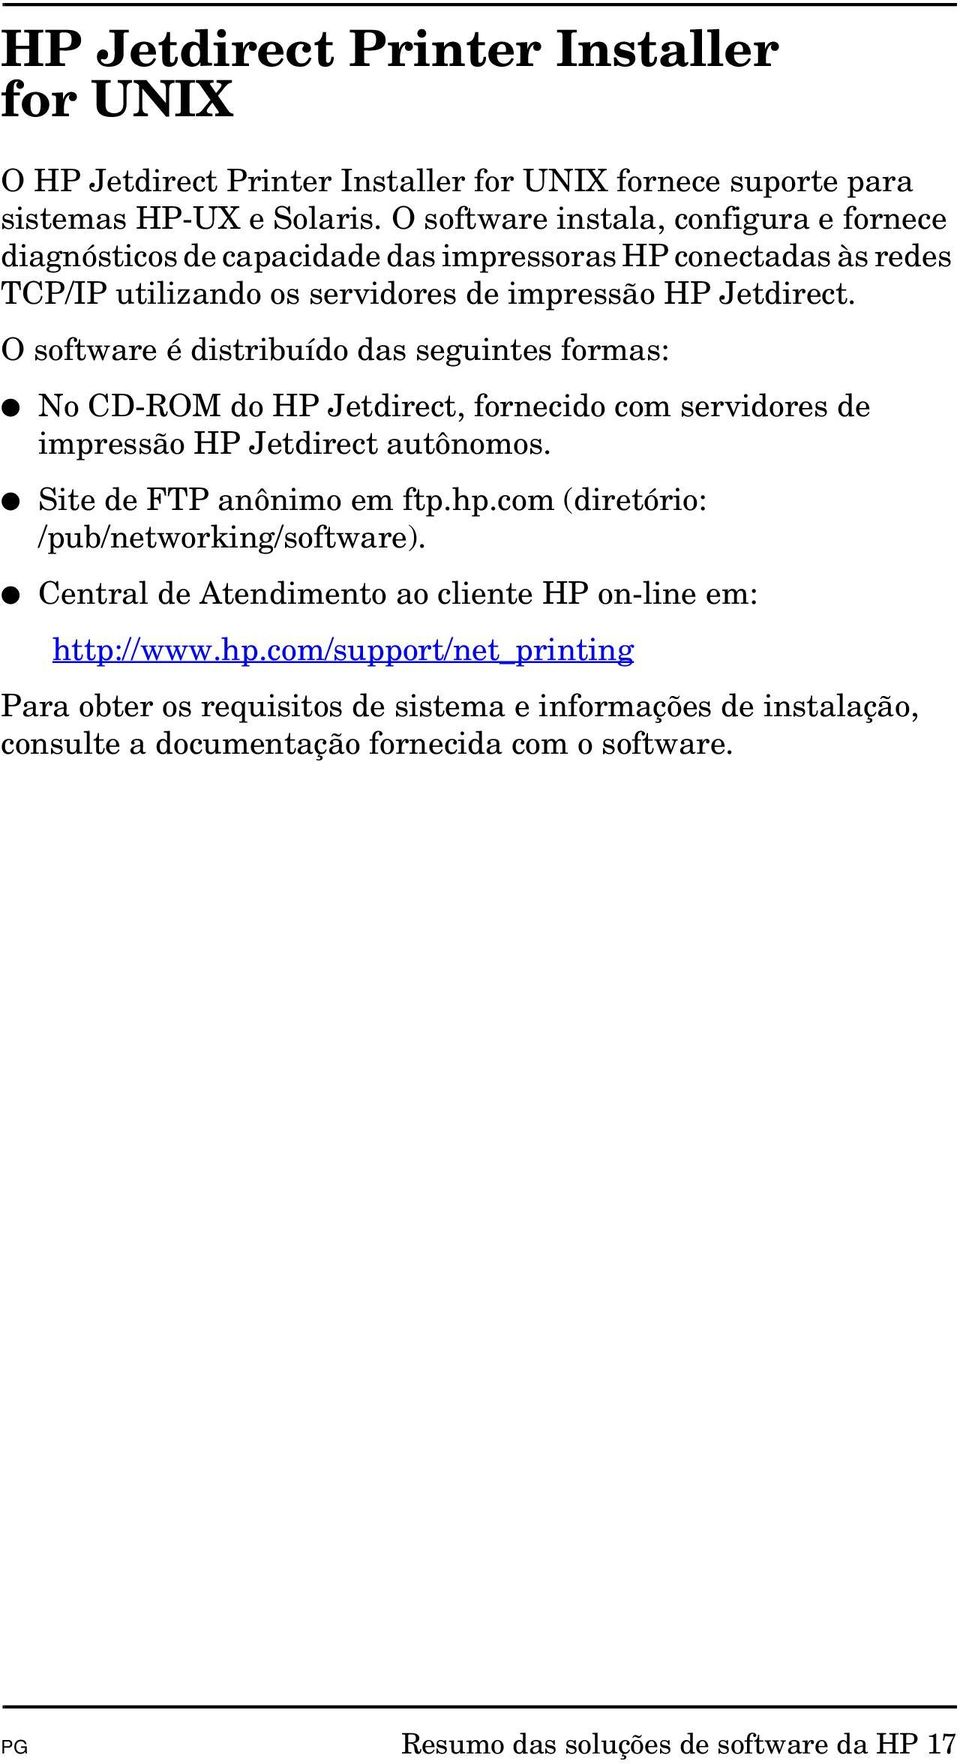 O software é distribuído das seguintes formas: No CD-ROM do HP Jetdirect, fornecido com servidores de impressão HP Jetdirect autônomos. Site de FTP anônimo em ftp.hp.